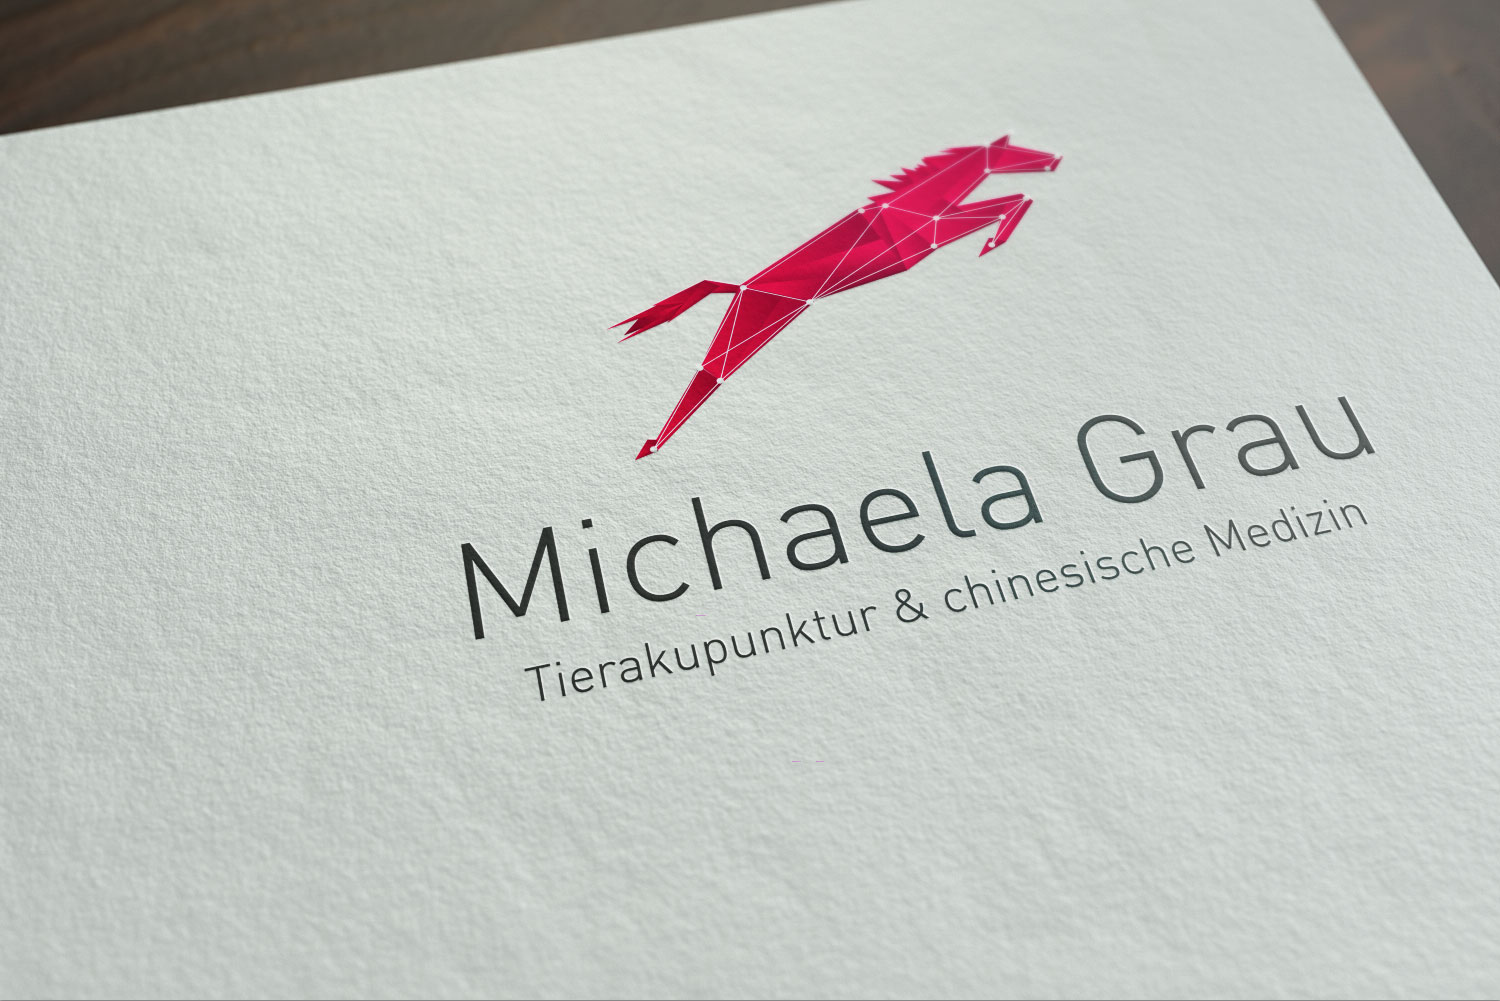 Branding Michaela Grau